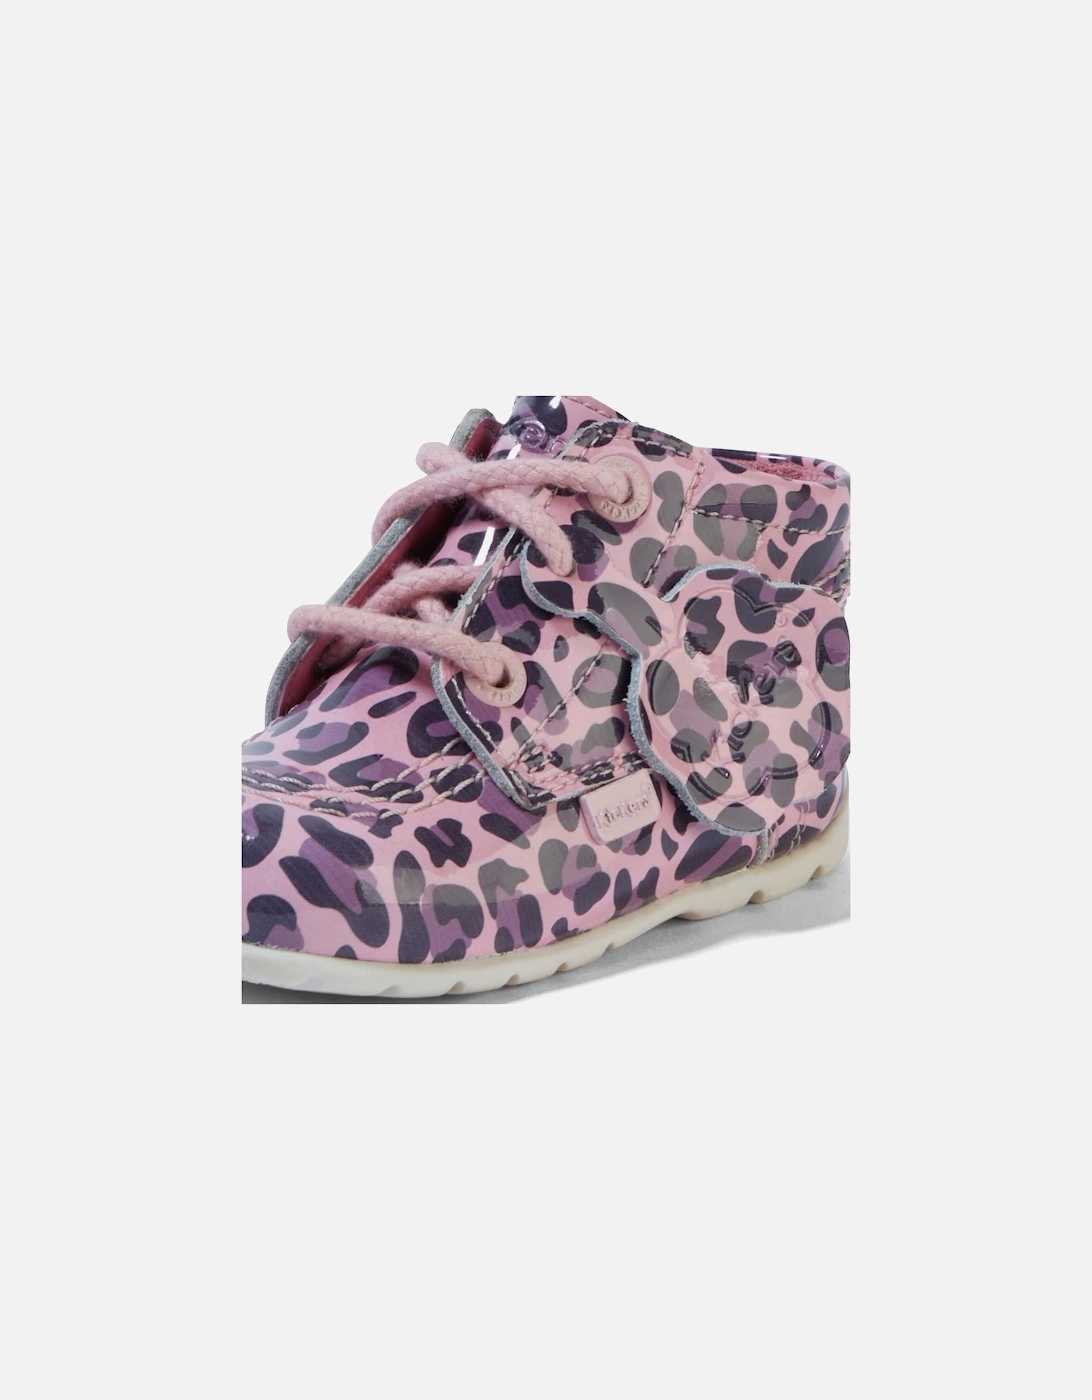 Baby Kick Hi Leopard Boots (Pink)